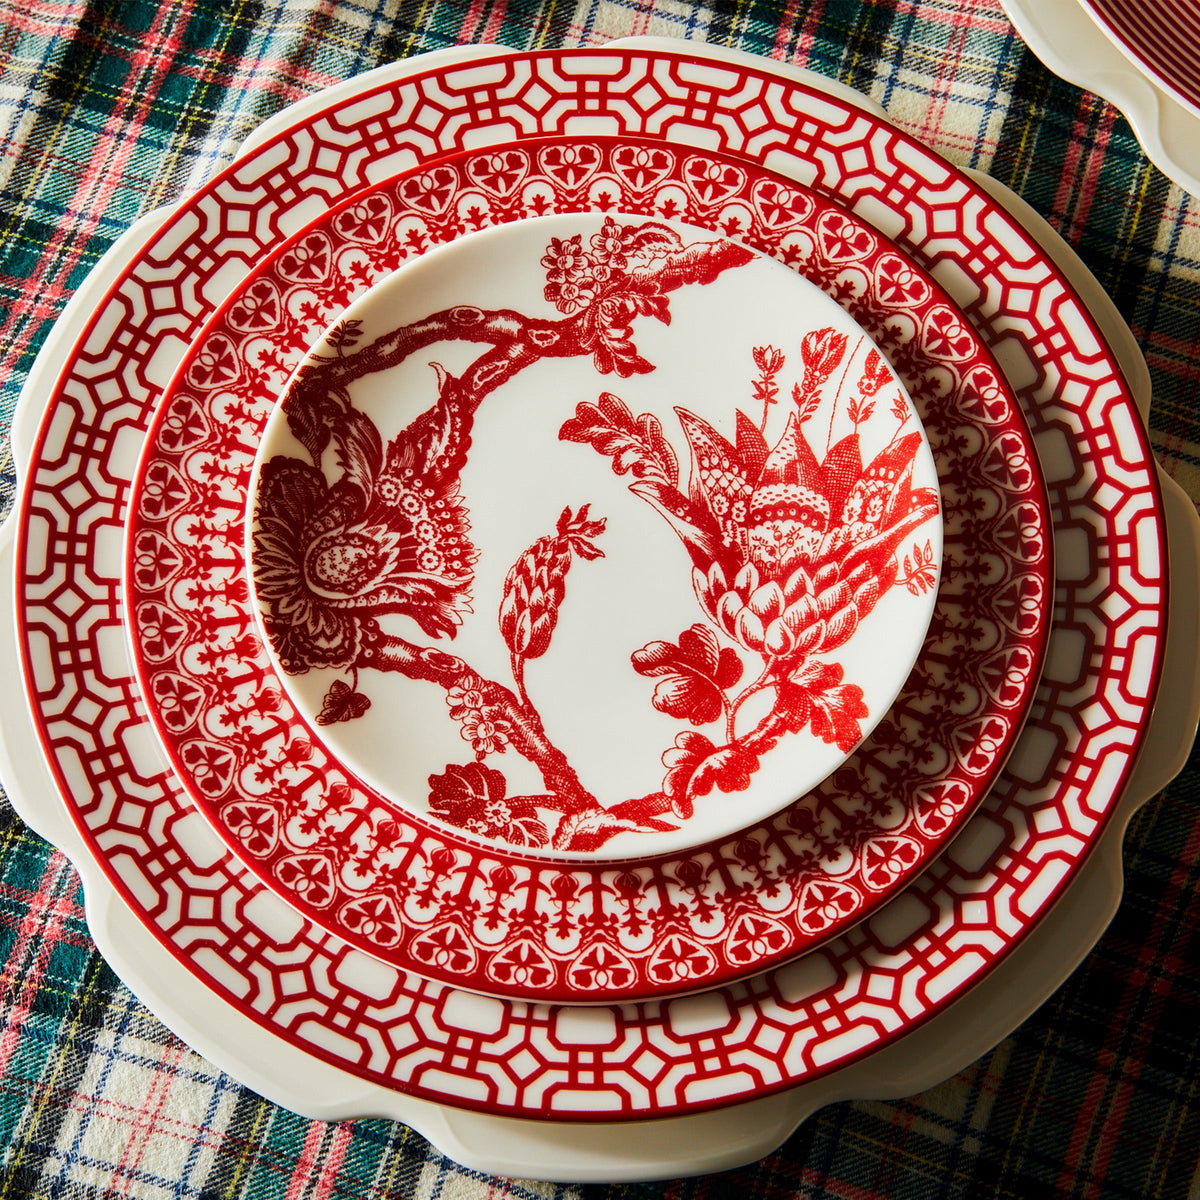 A Newport Garden Gate Crimson Dinner Plate by Caskata Artisanal Home on a table.